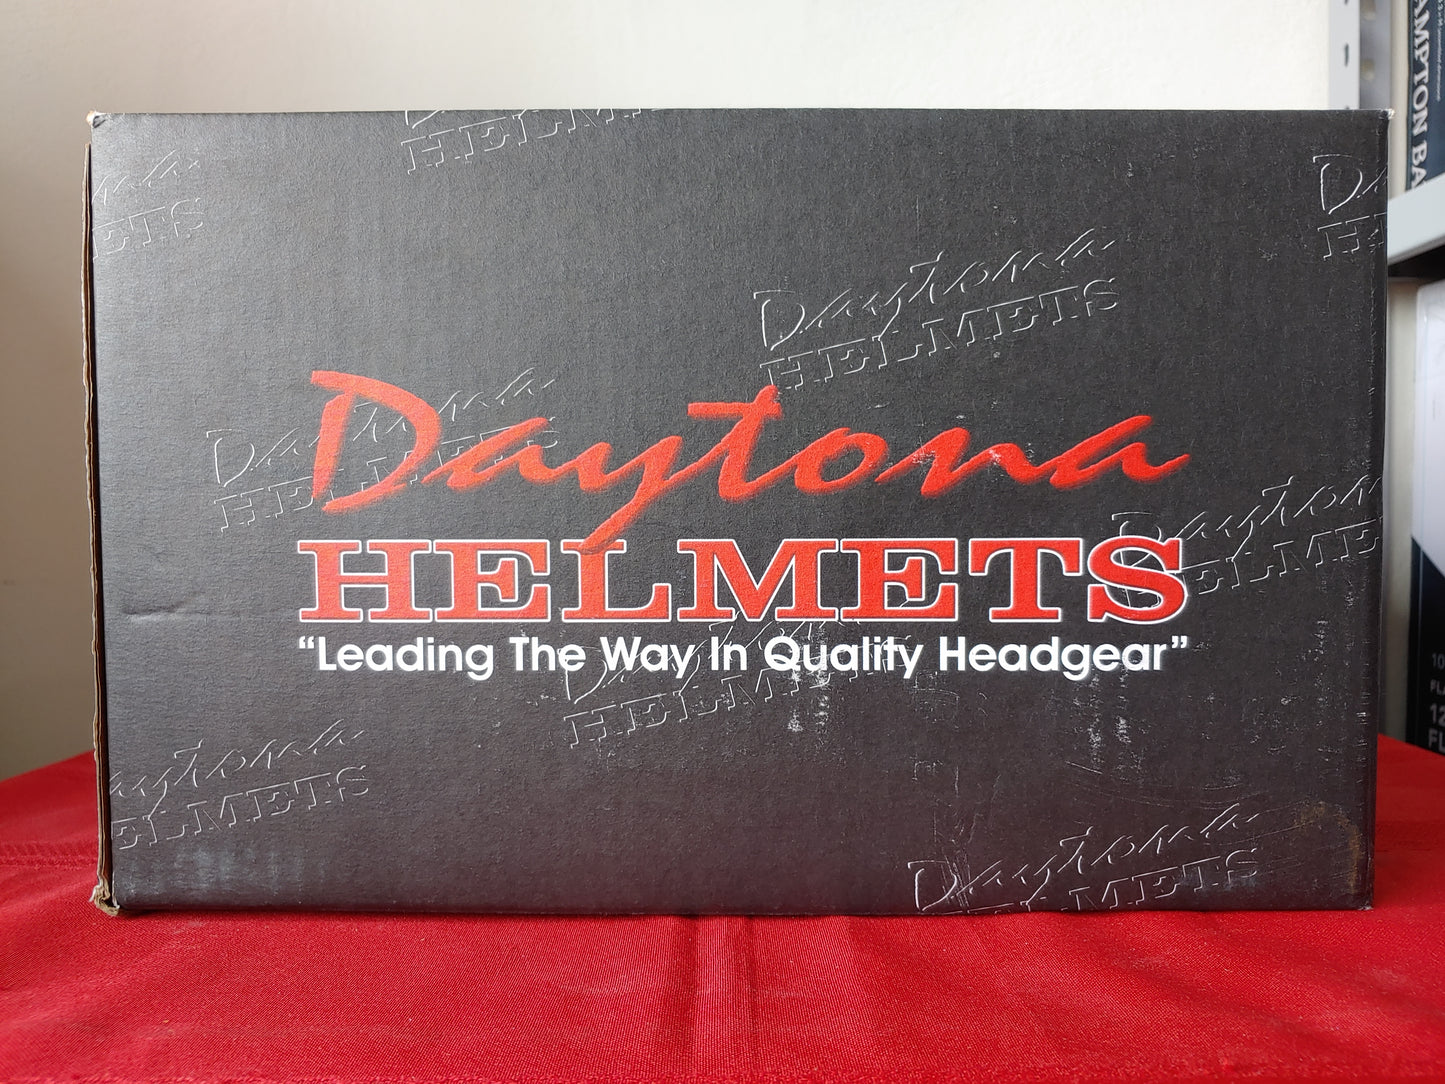 Casco para motocicleta color negro brillante (Talla S) - Daytona Helmets Hawk (Nuevo, caja abierta)